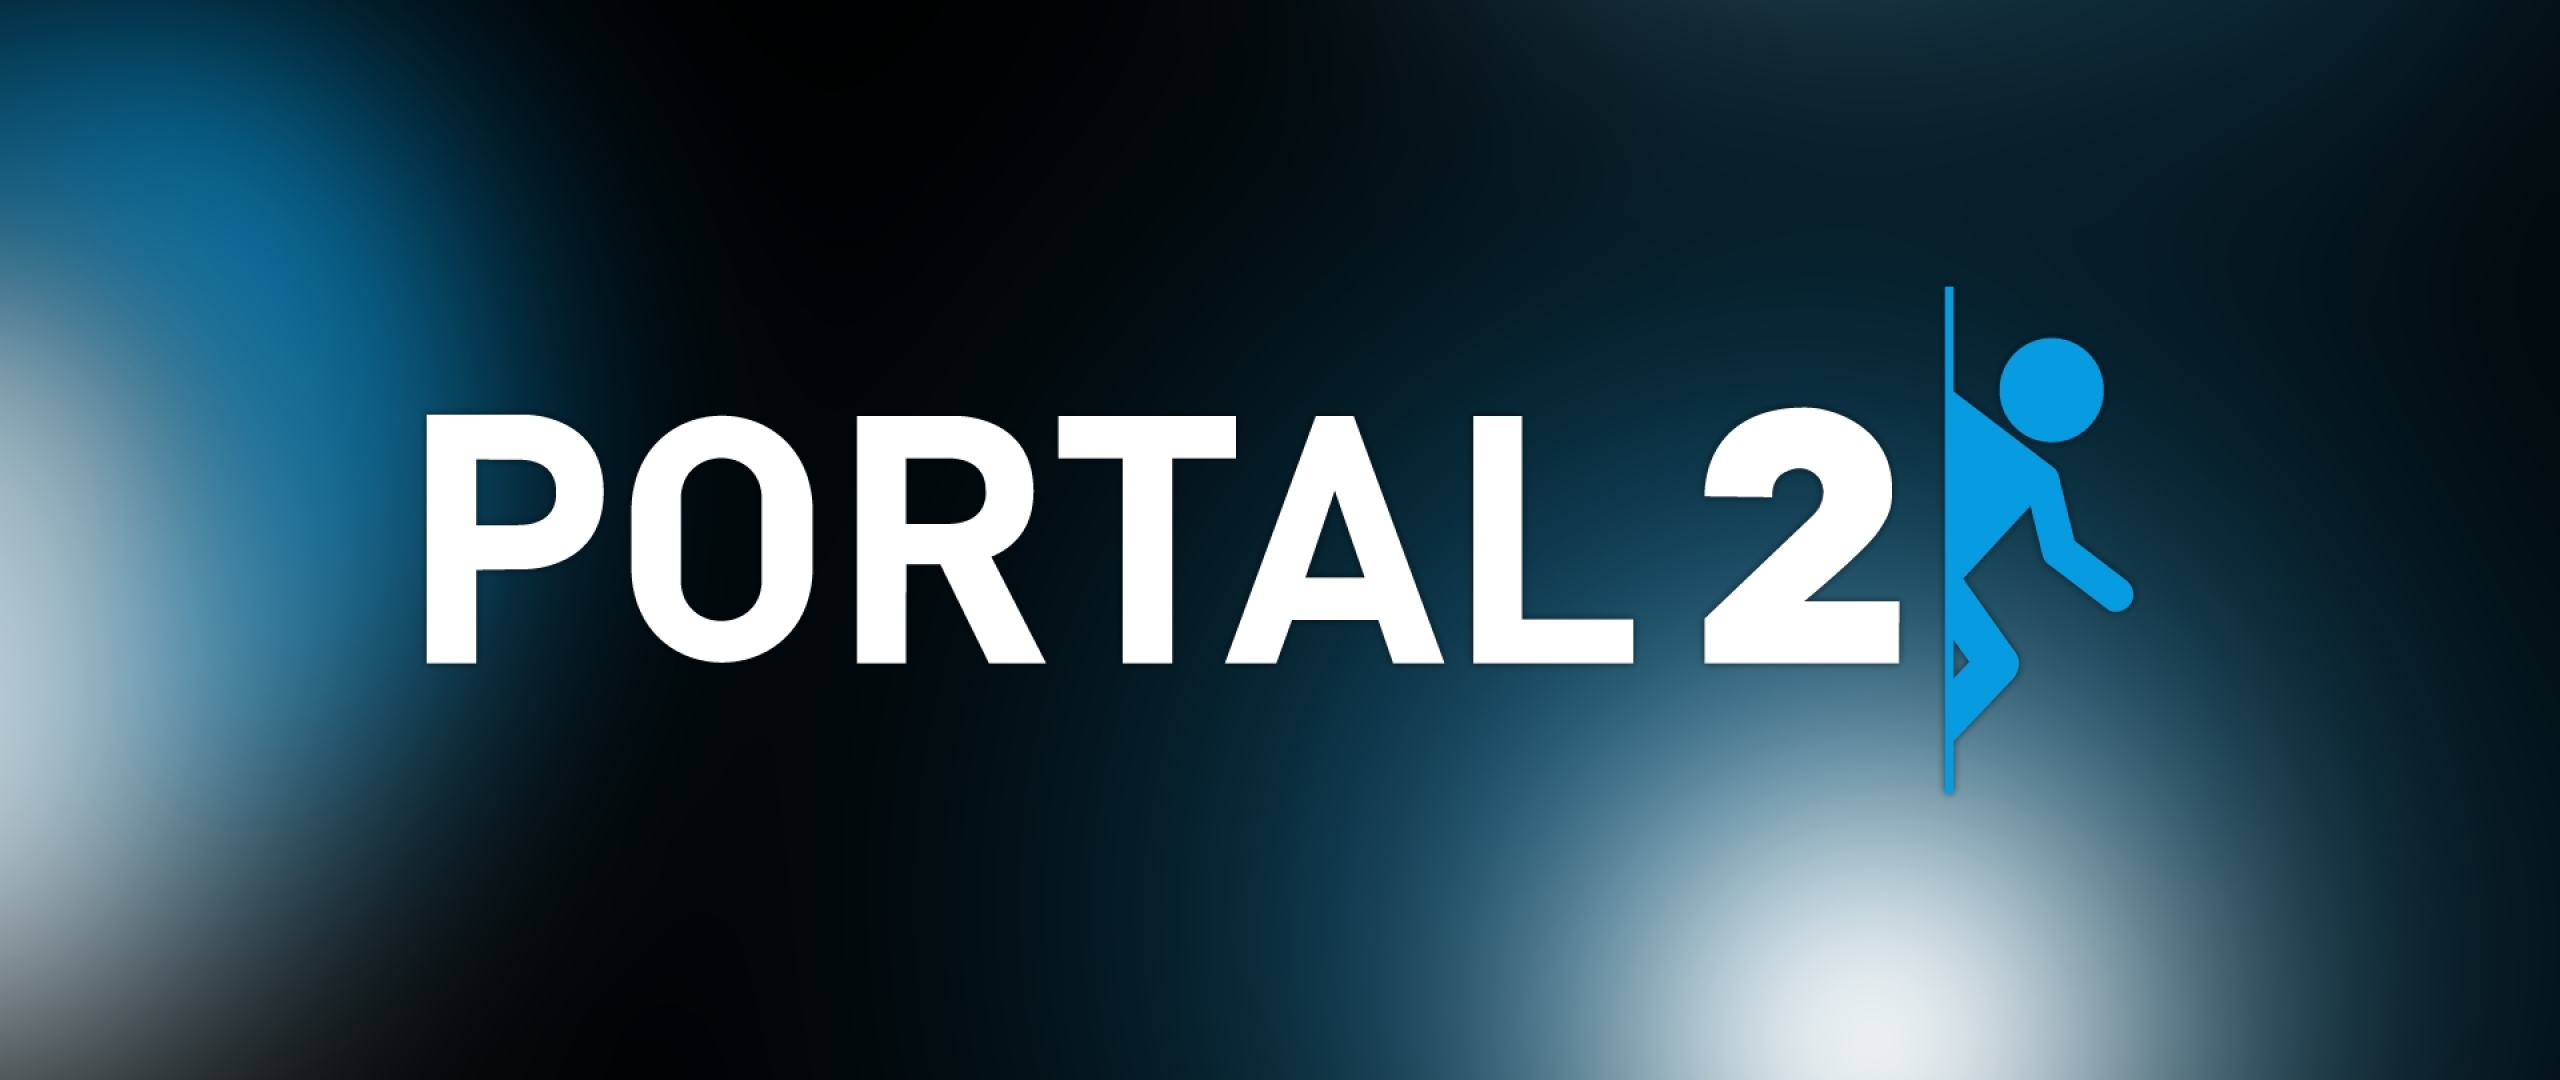 Portal 2 for mac os фото 66